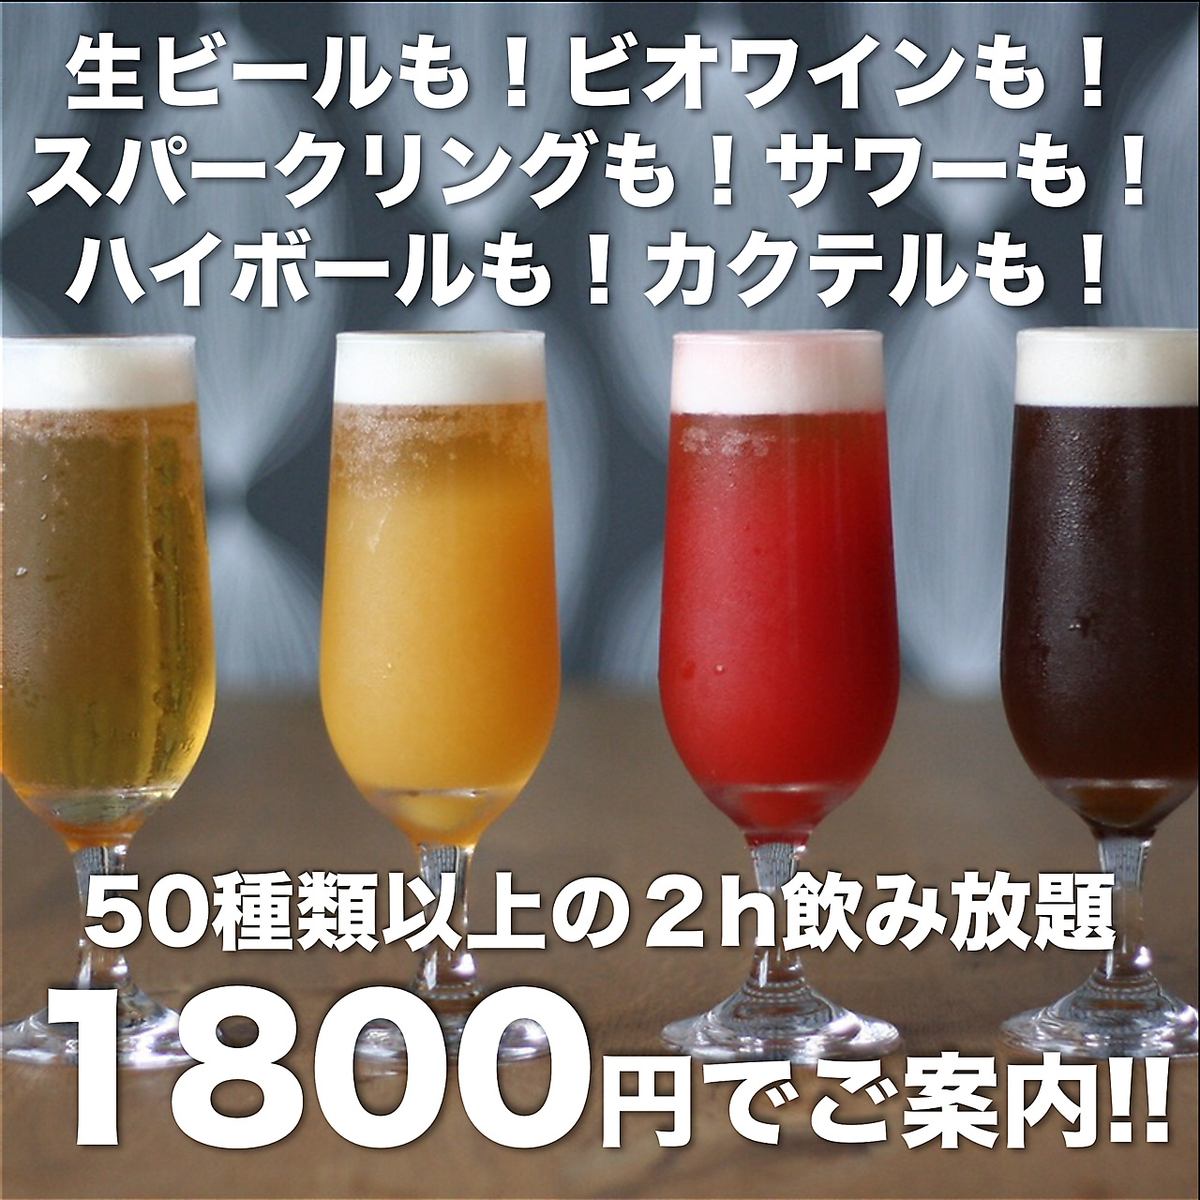 2小时无限畅饮1,800日元！在女生聚会和宴会上很受欢迎◎